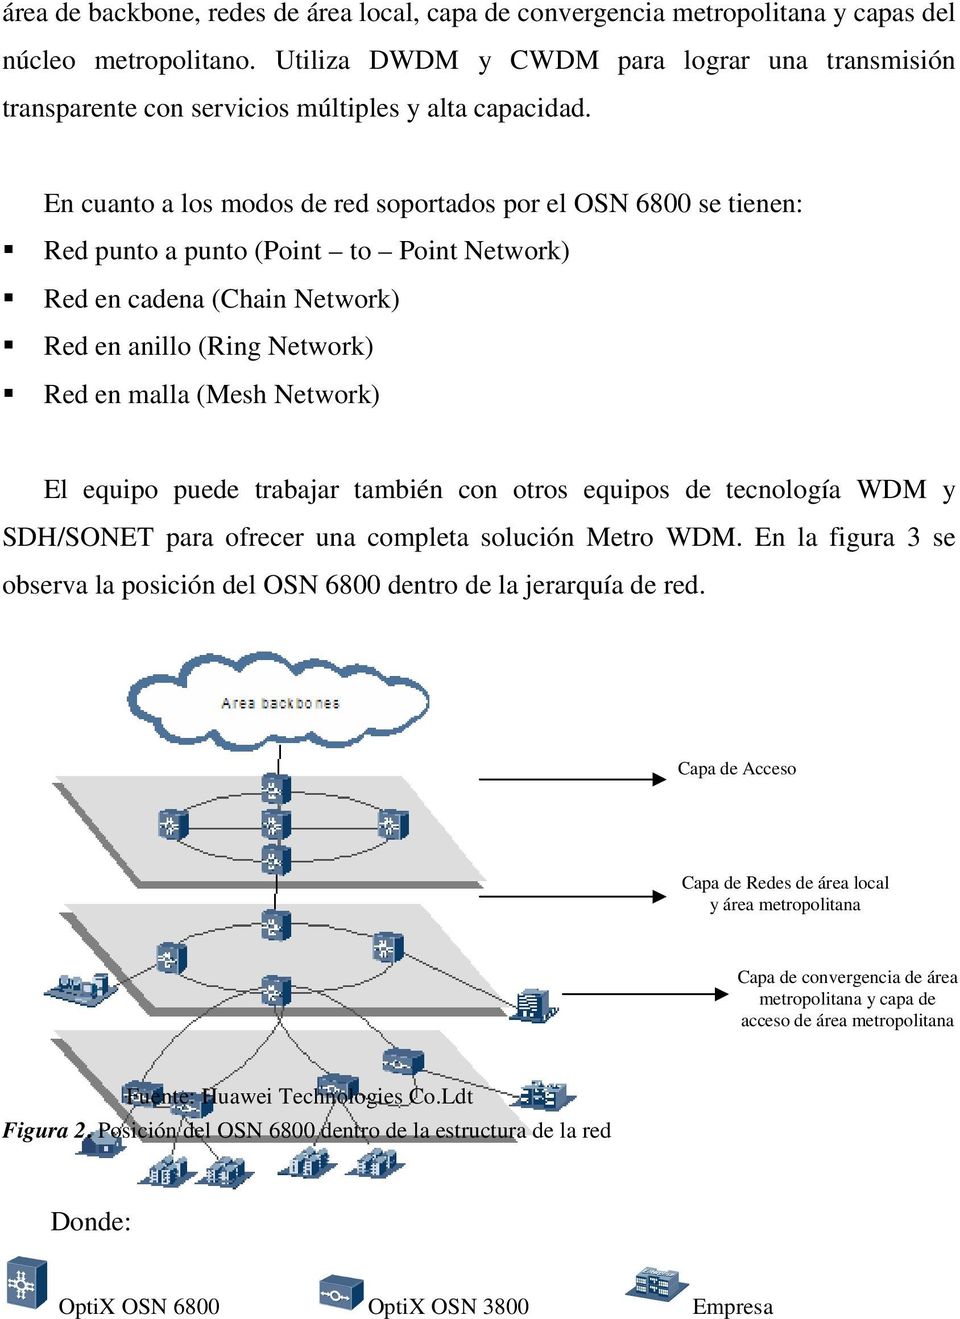 En cuanto a los modos de red soportados por el OSN 6800 se tienen: Red punto a punto (Point to Point Network) Red en cadena (Chain Network) Red en anillo (Ring Network) Red en malla (Mesh Network) El